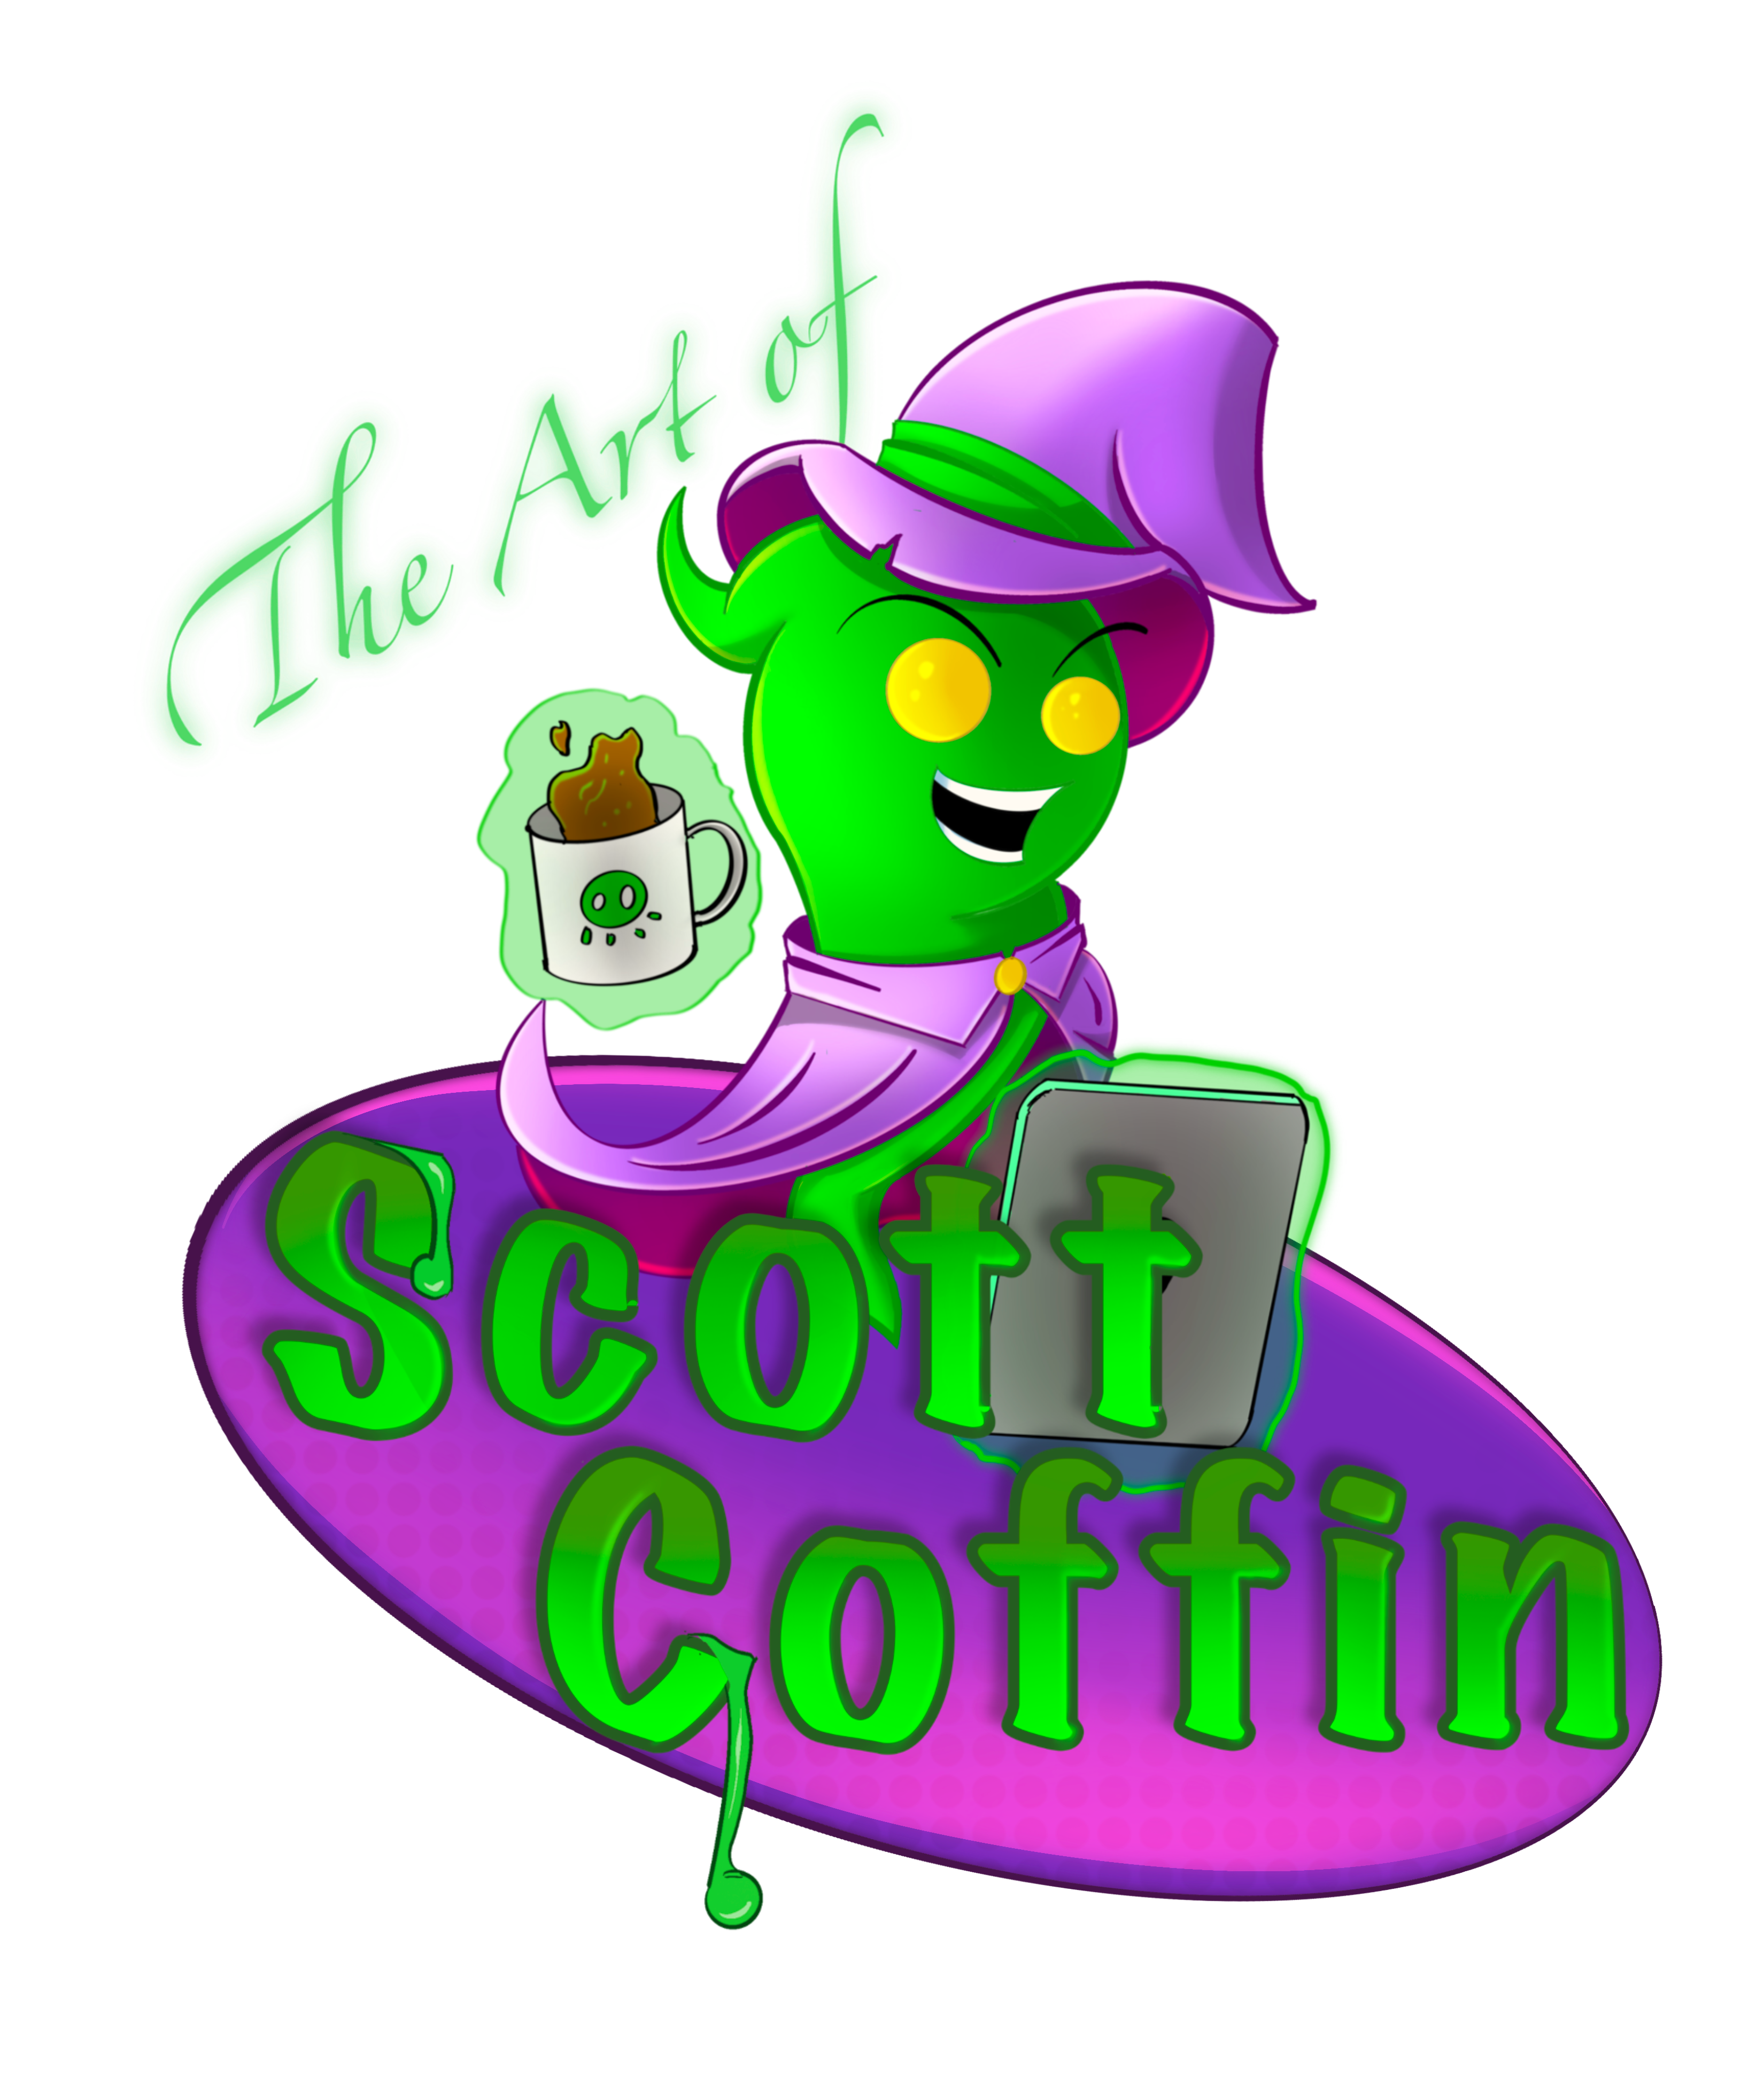 Scott Coffin